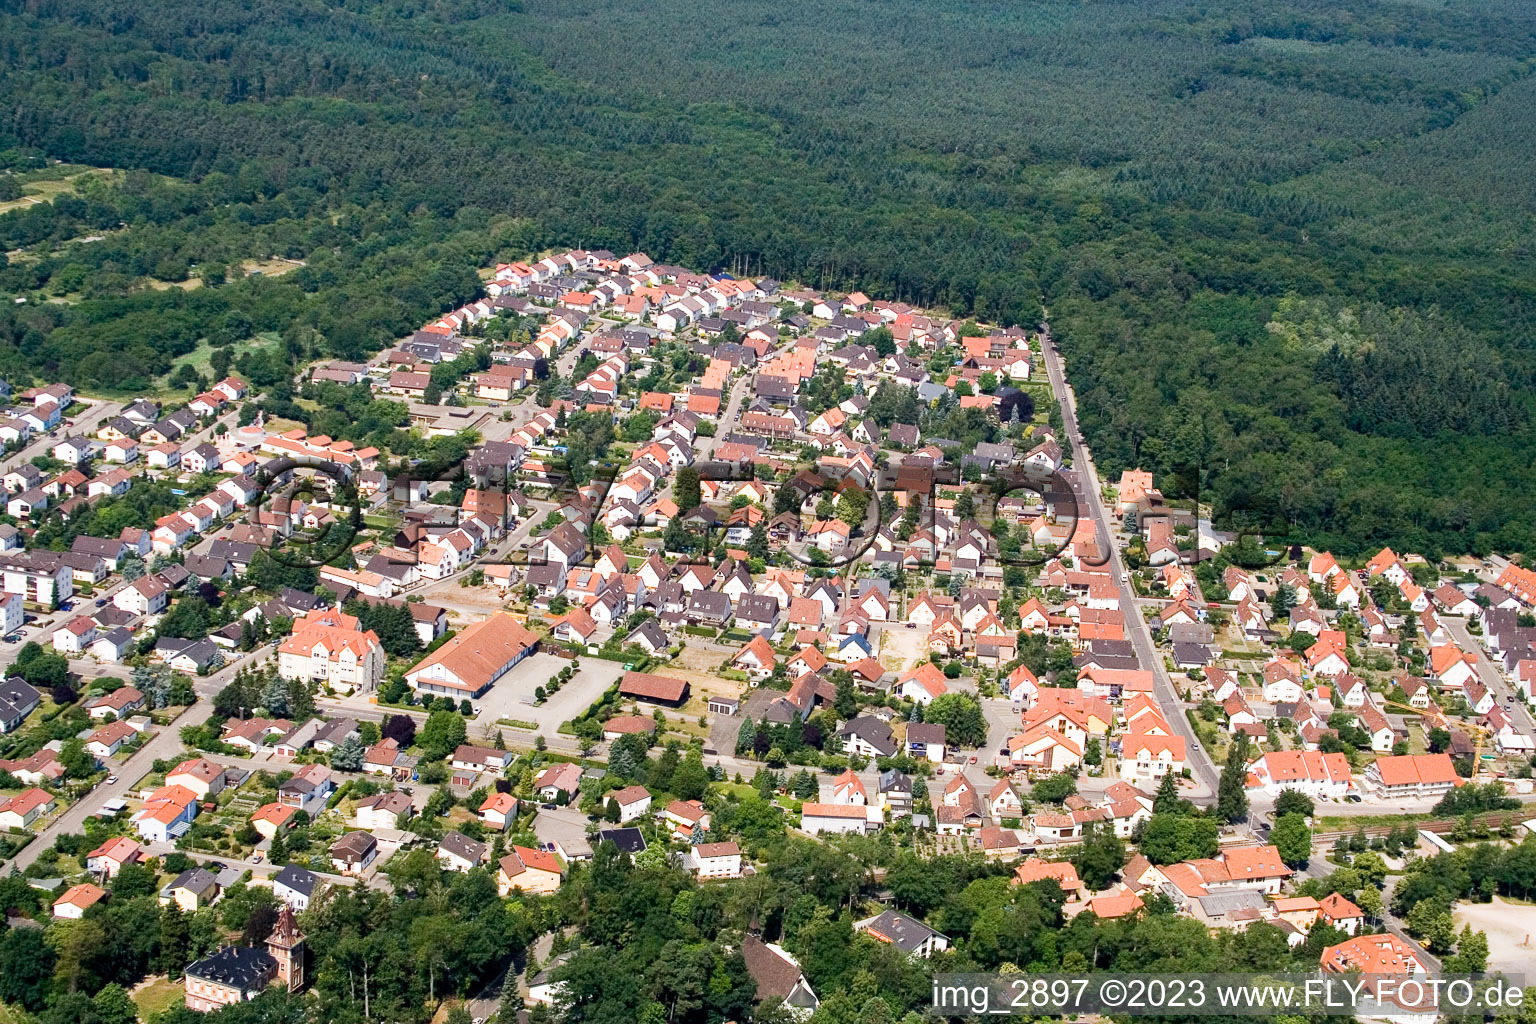 Vue aérienne de Sud à Jockgrim dans le département Rhénanie-Palatinat, Allemagne